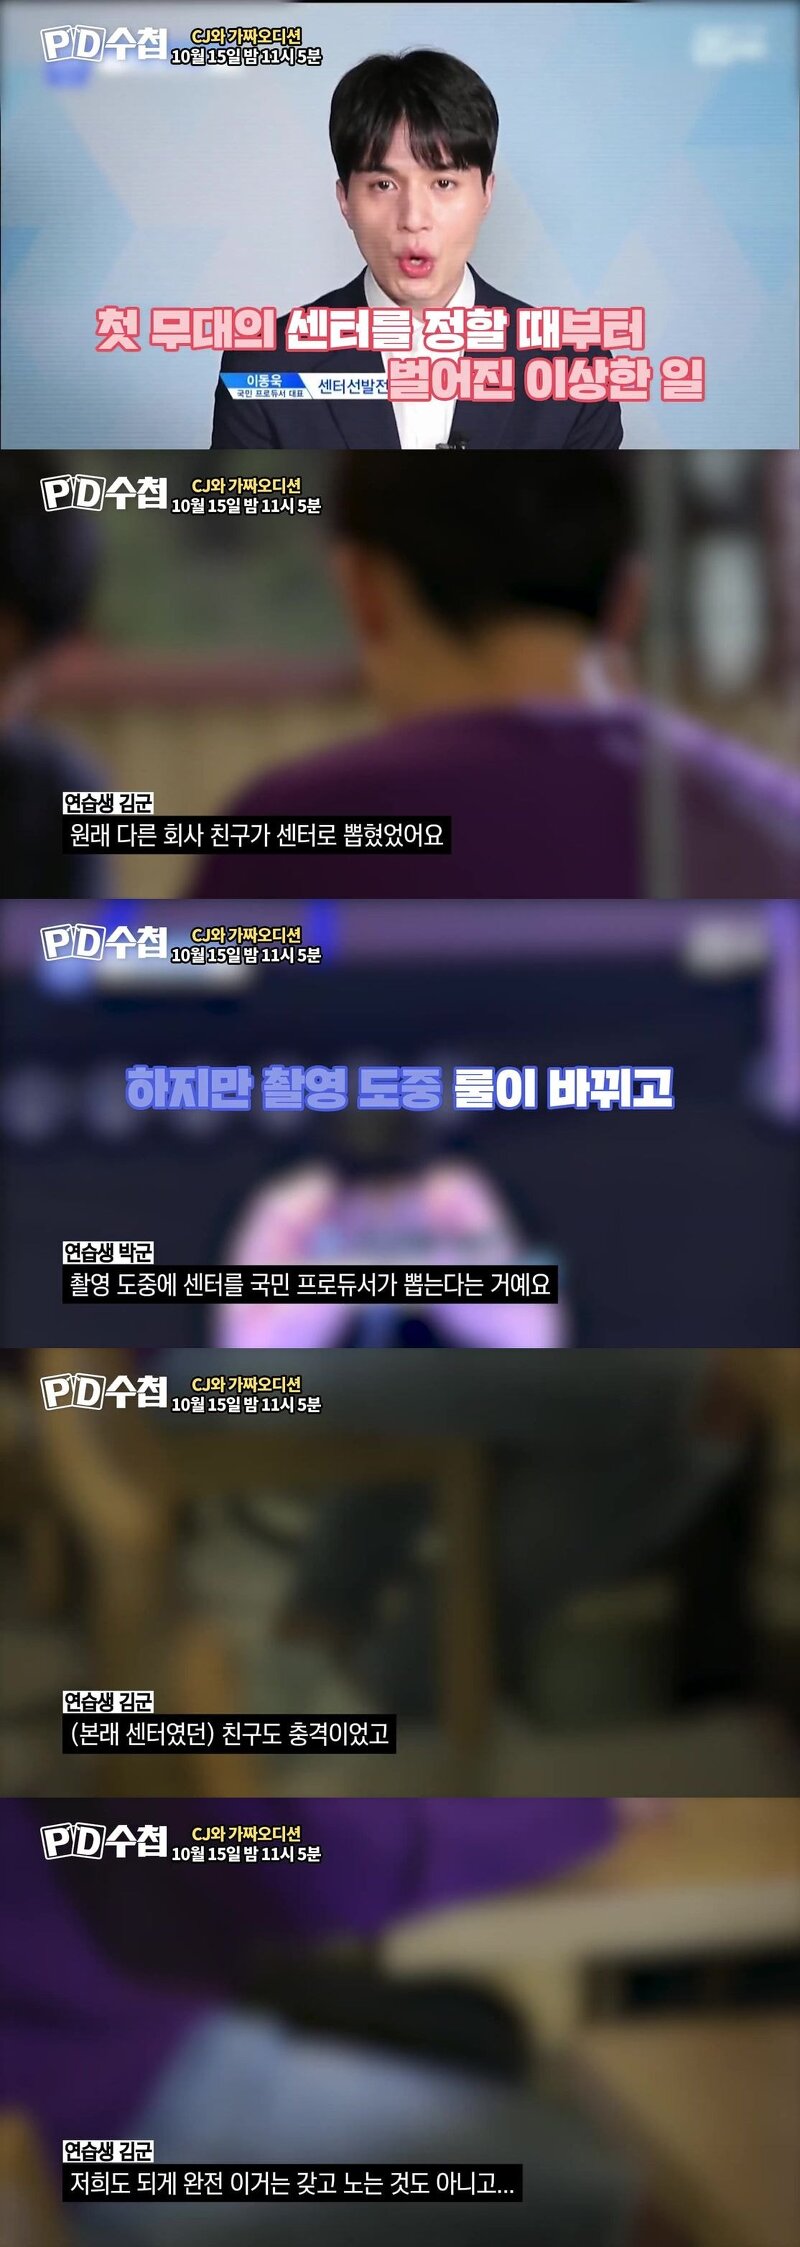 PD수첩 오늘 방송(프듀 주작) 미리보기 타이틀곡 센터의 비밀